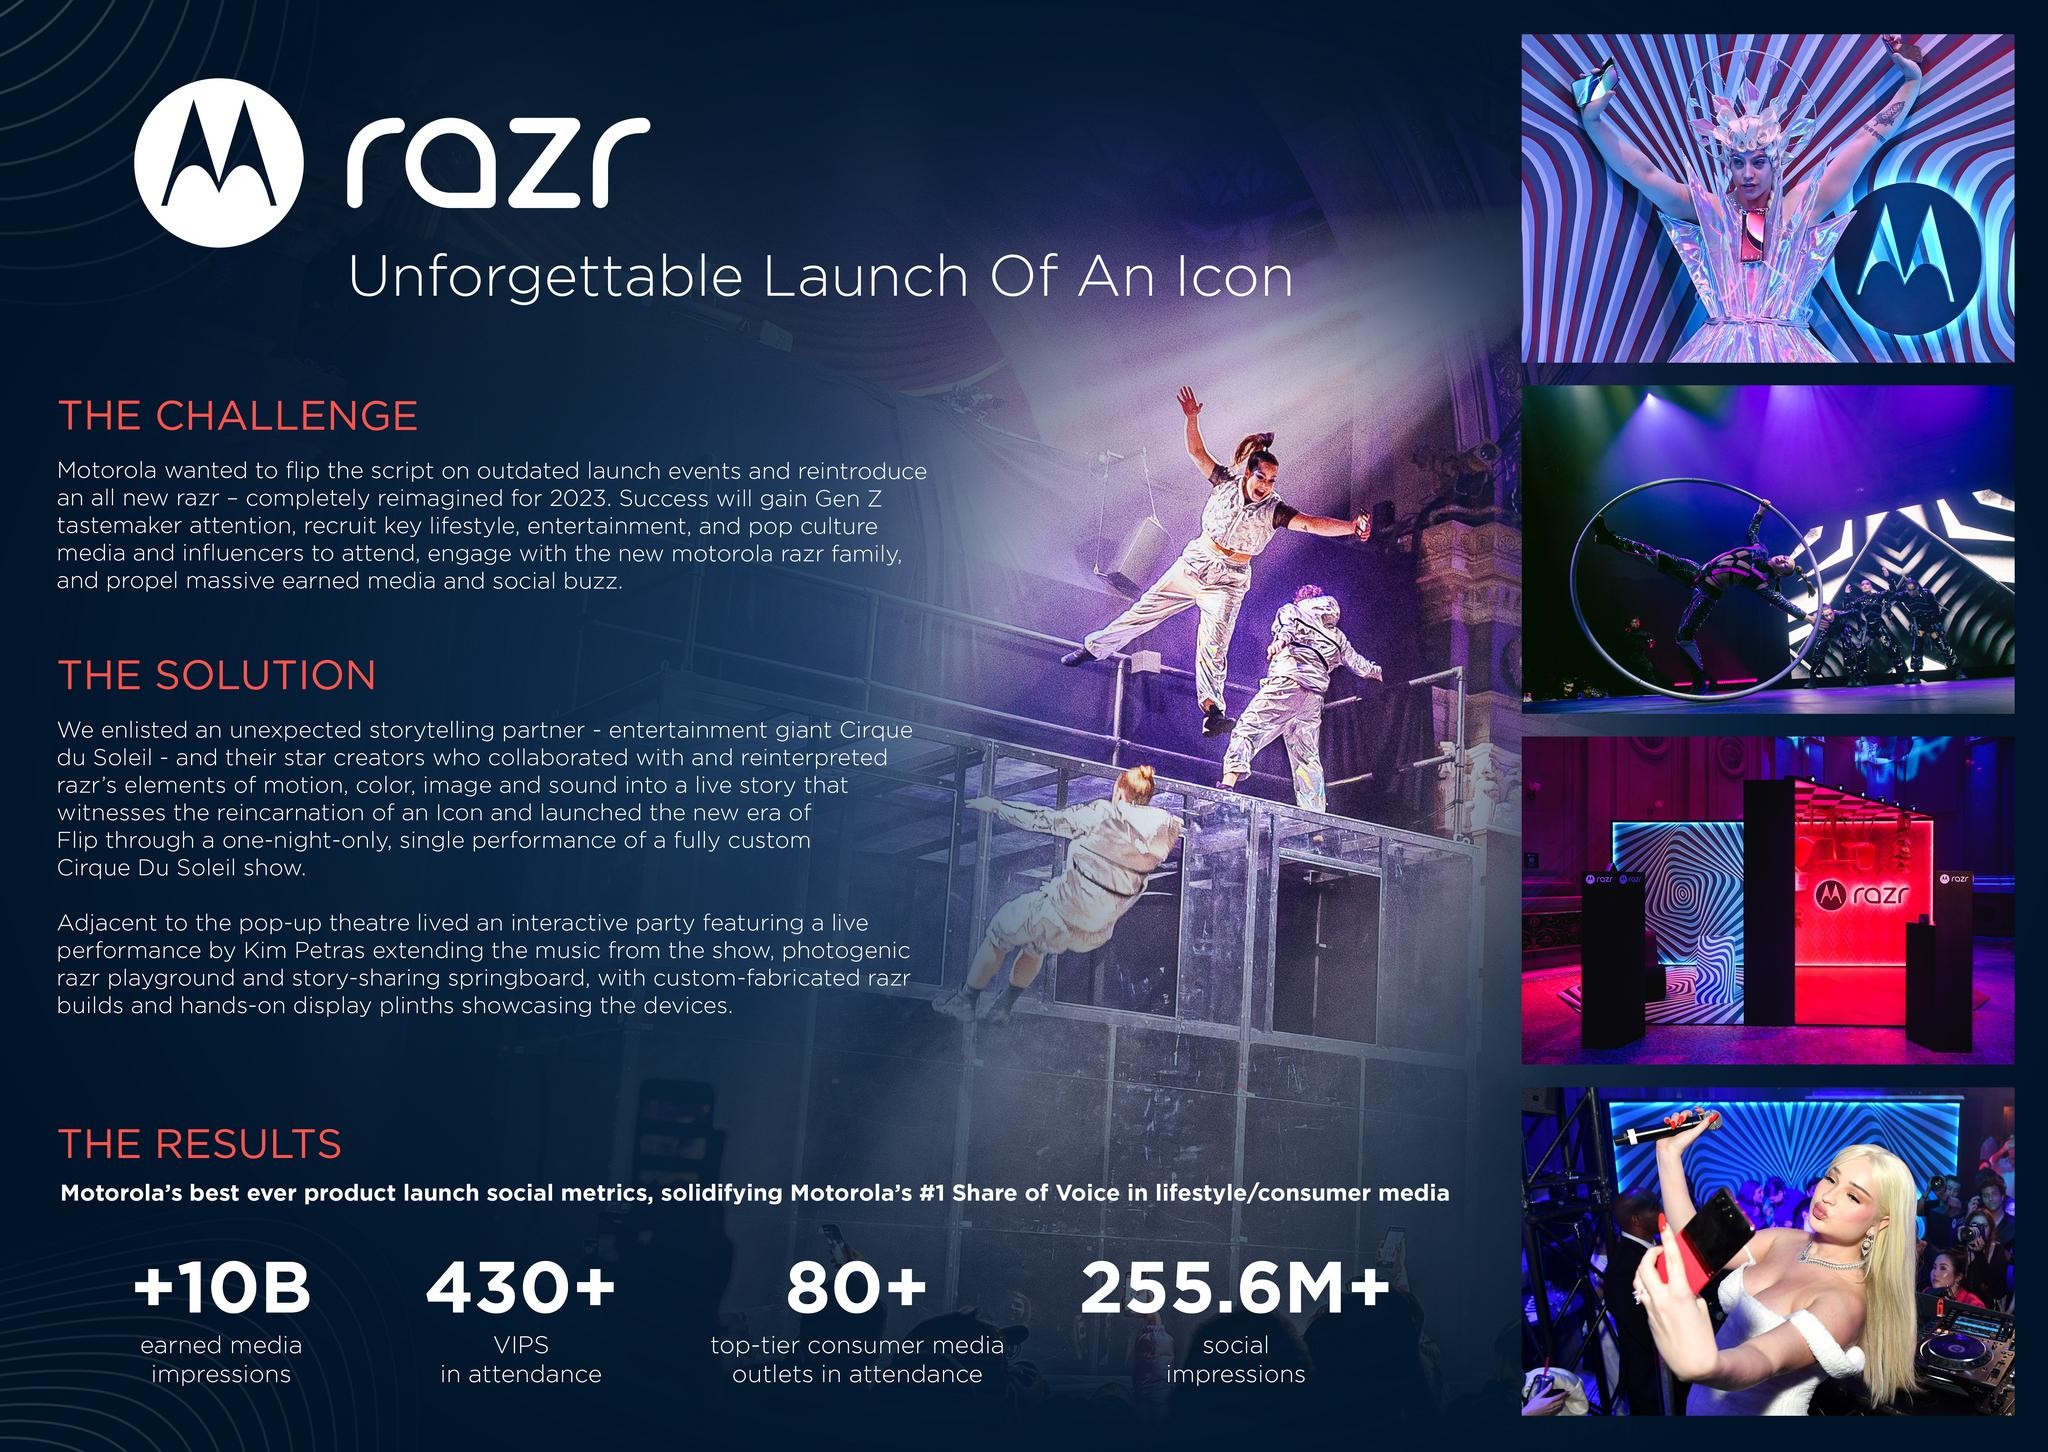 Motorola razr - Unforgettable Launch of an Icon With Cirque du Soleil